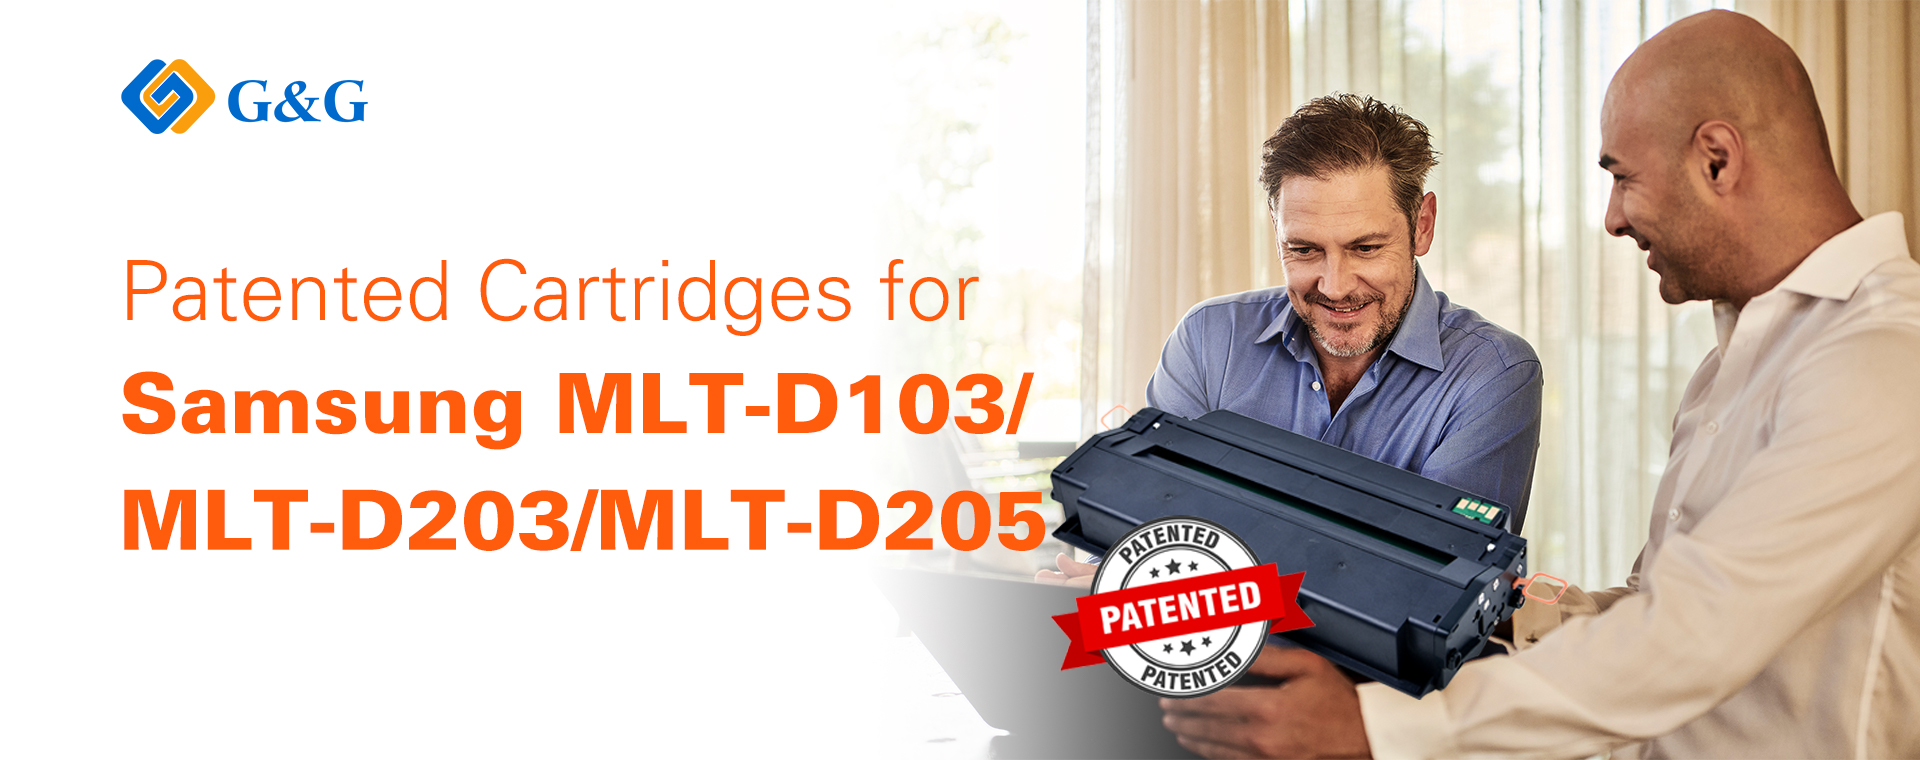 G&G MLT-D103, MLT-D203, MLT-D205, and MLT-D305 .jpg